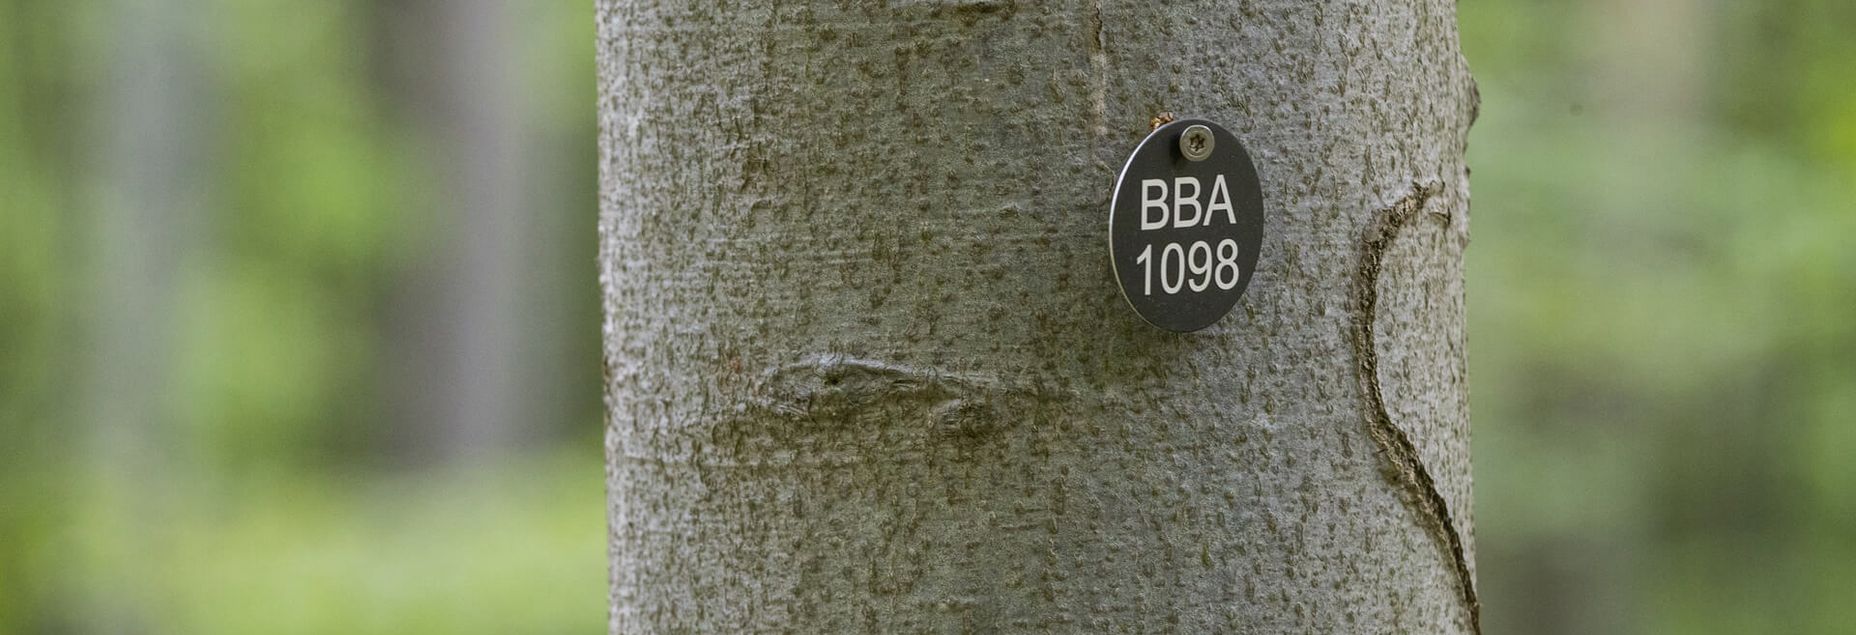 Baum BBA 1098 - Plakette